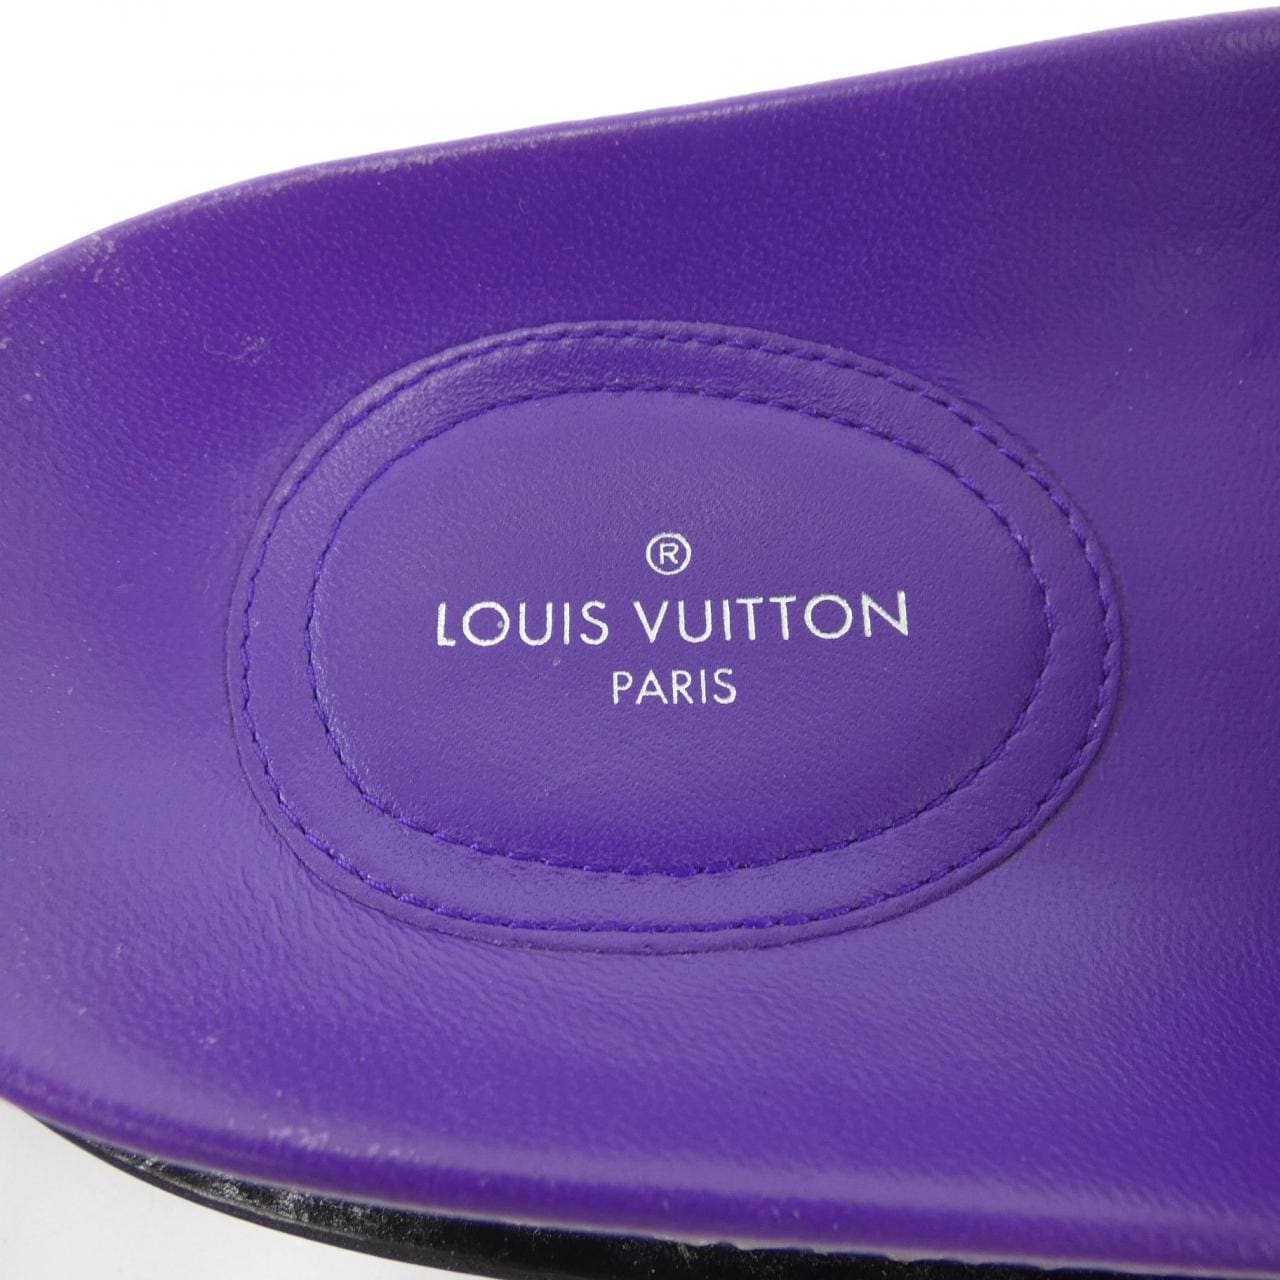 LOUIS LOUIS VUITTON sandals